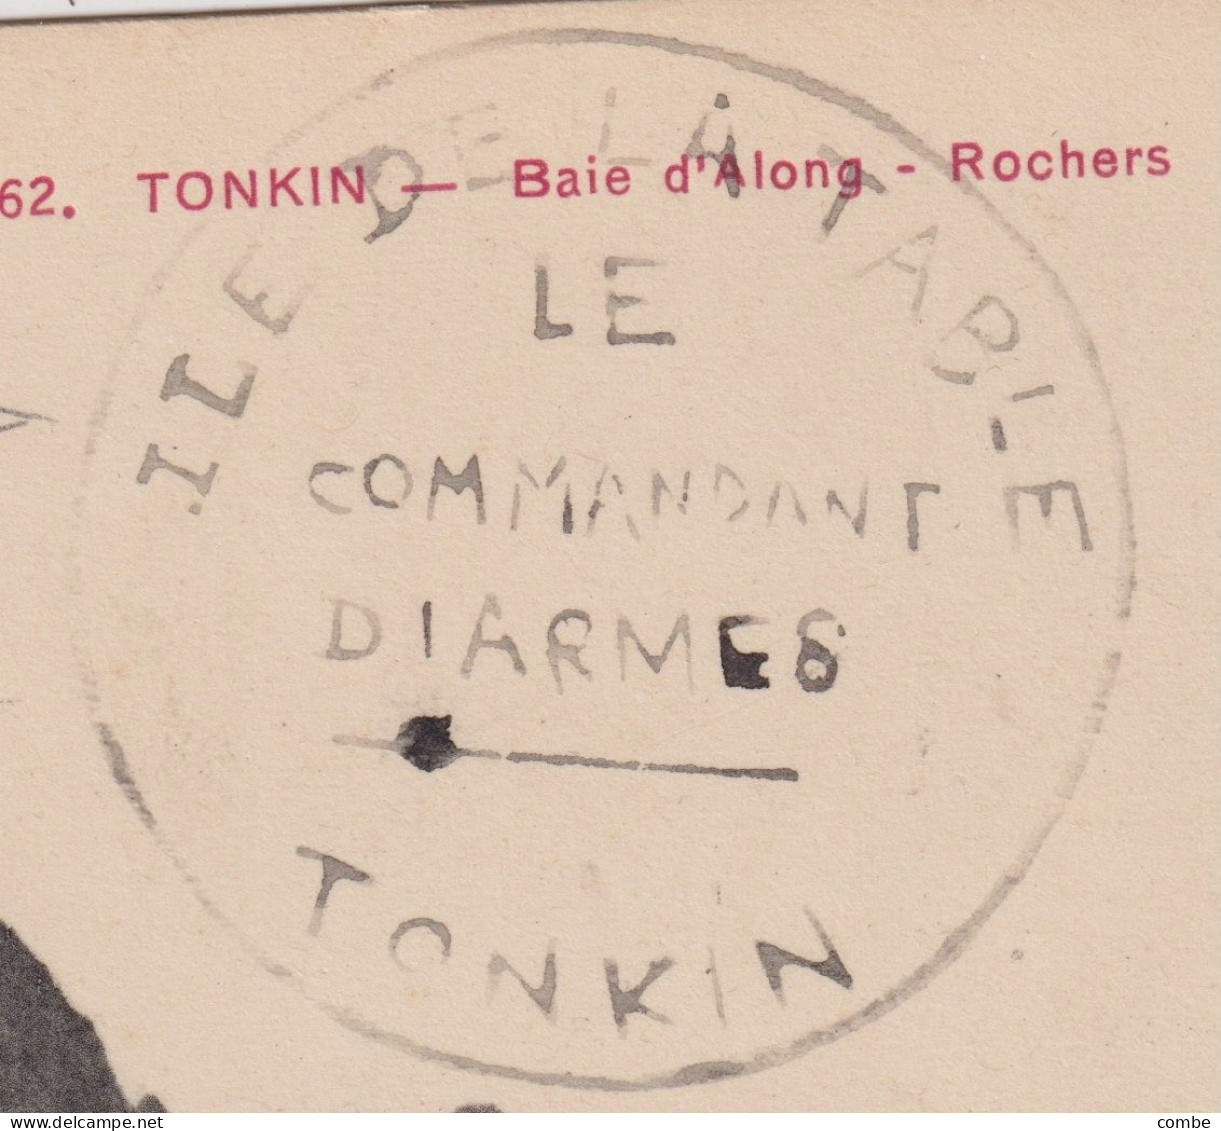 INDOCHINE. RARE CACHET ILE DE LA TABLE TONKIN, LE COMMANDANT D'ARMES. SUR CARTE. BAIE D'ALONG TONKIN - Covers & Documents